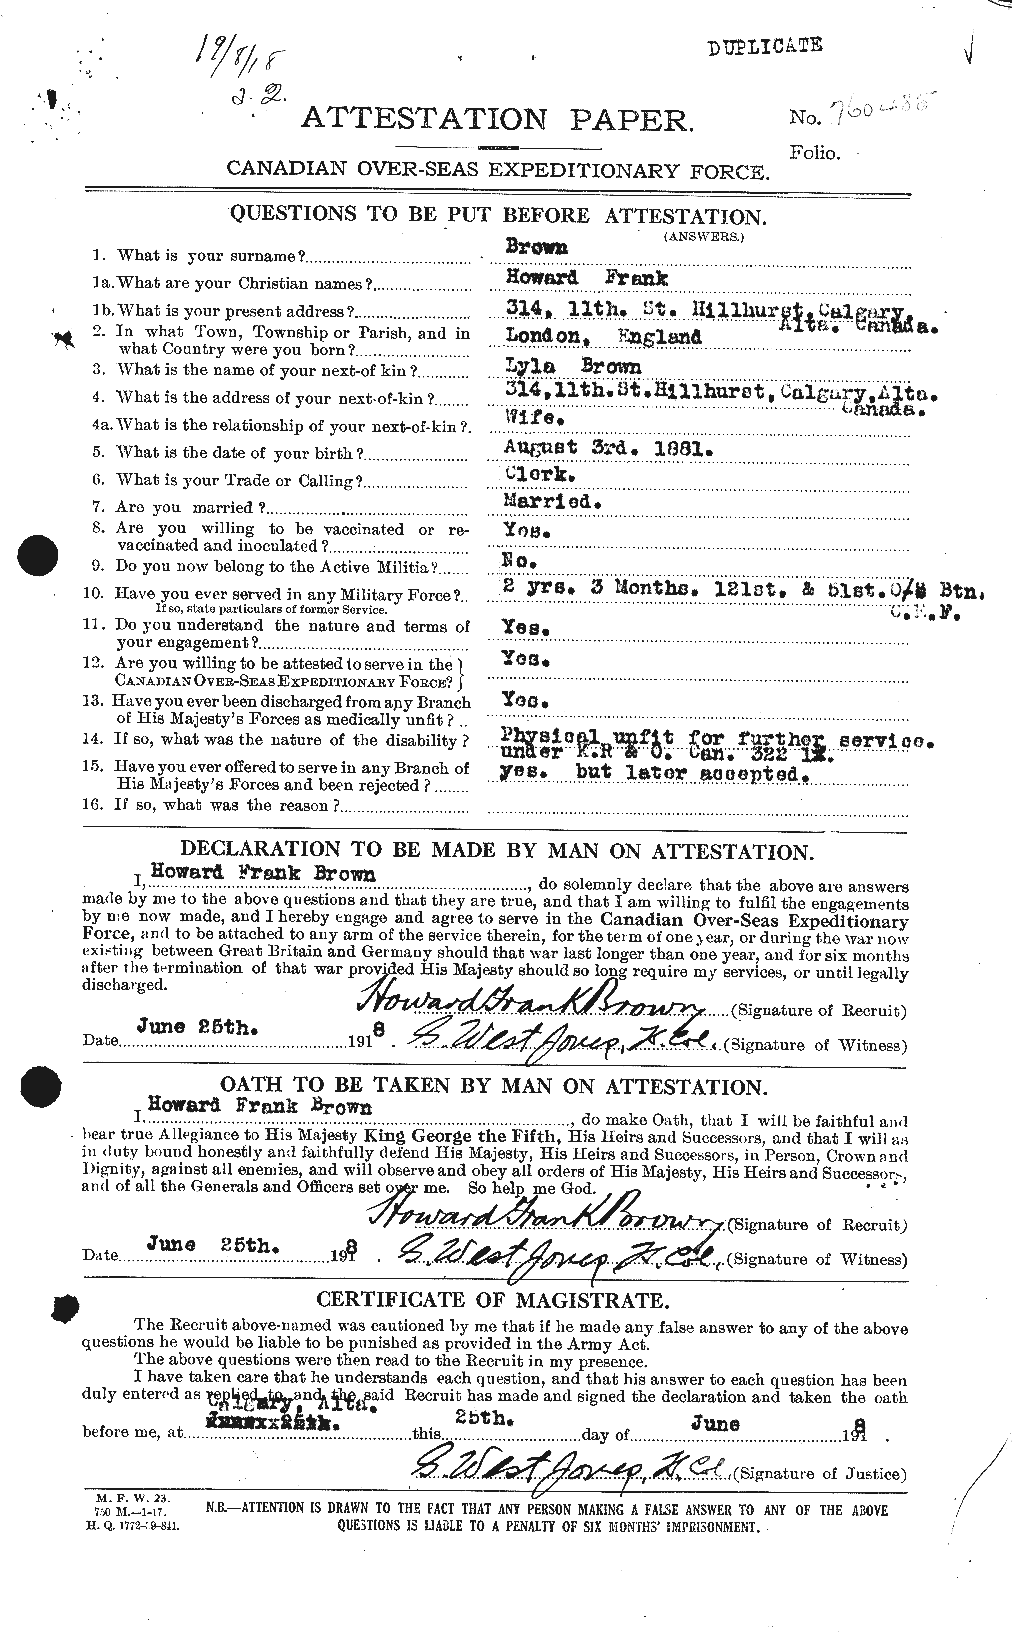 Dossiers du Personnel de la Première Guerre mondiale - CEC 265618a